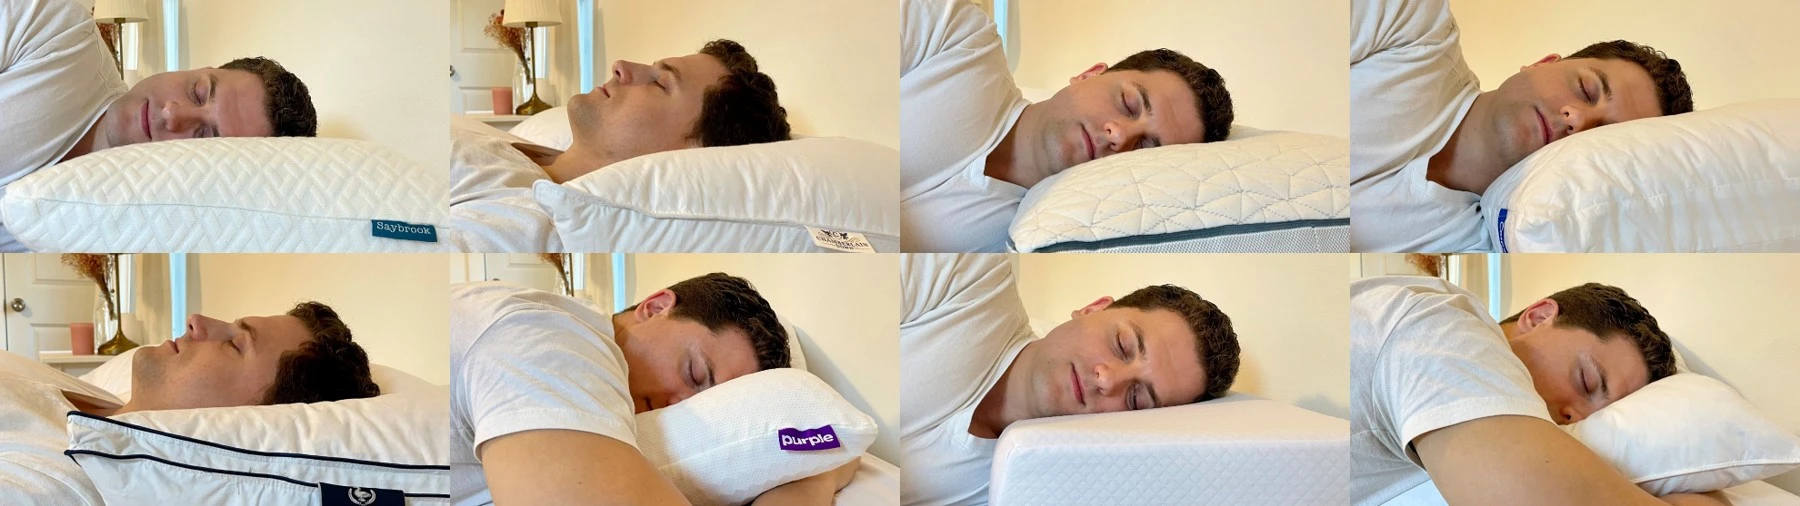 https://pillowspecialist.com/img/best-pillow-review-header.webp